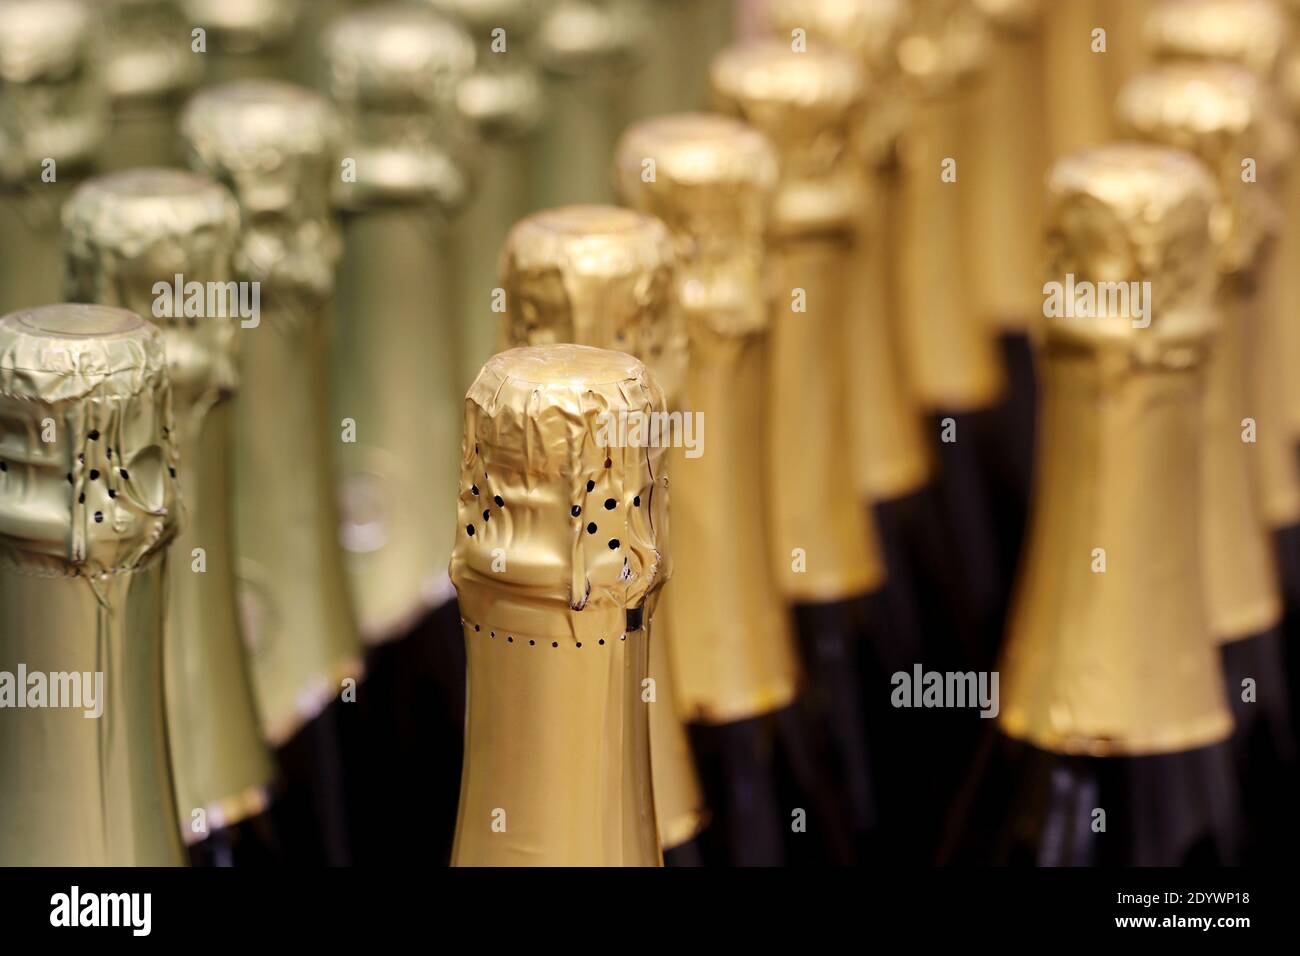 Bouteilles de vin mousseux en papier d'aluminium doré pour la fête. Champagne dans un magasin de vin, industrie de l'alcool Banque D'Images